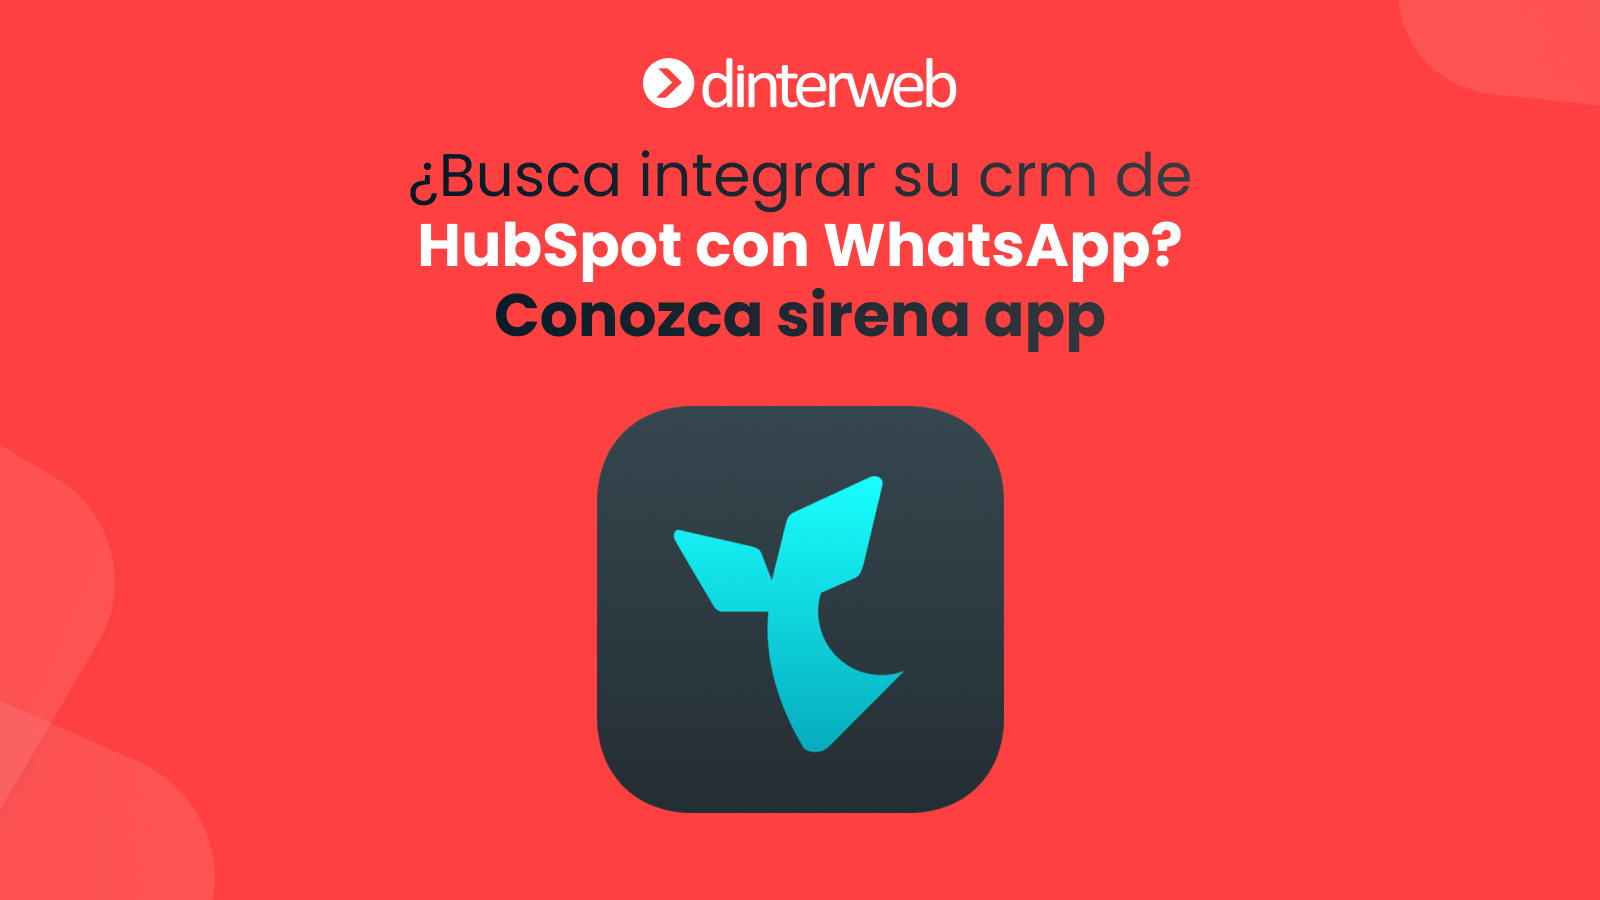 ¿Busca integrar su crm de HubSpot con WhatsApp? Conozca sirena app